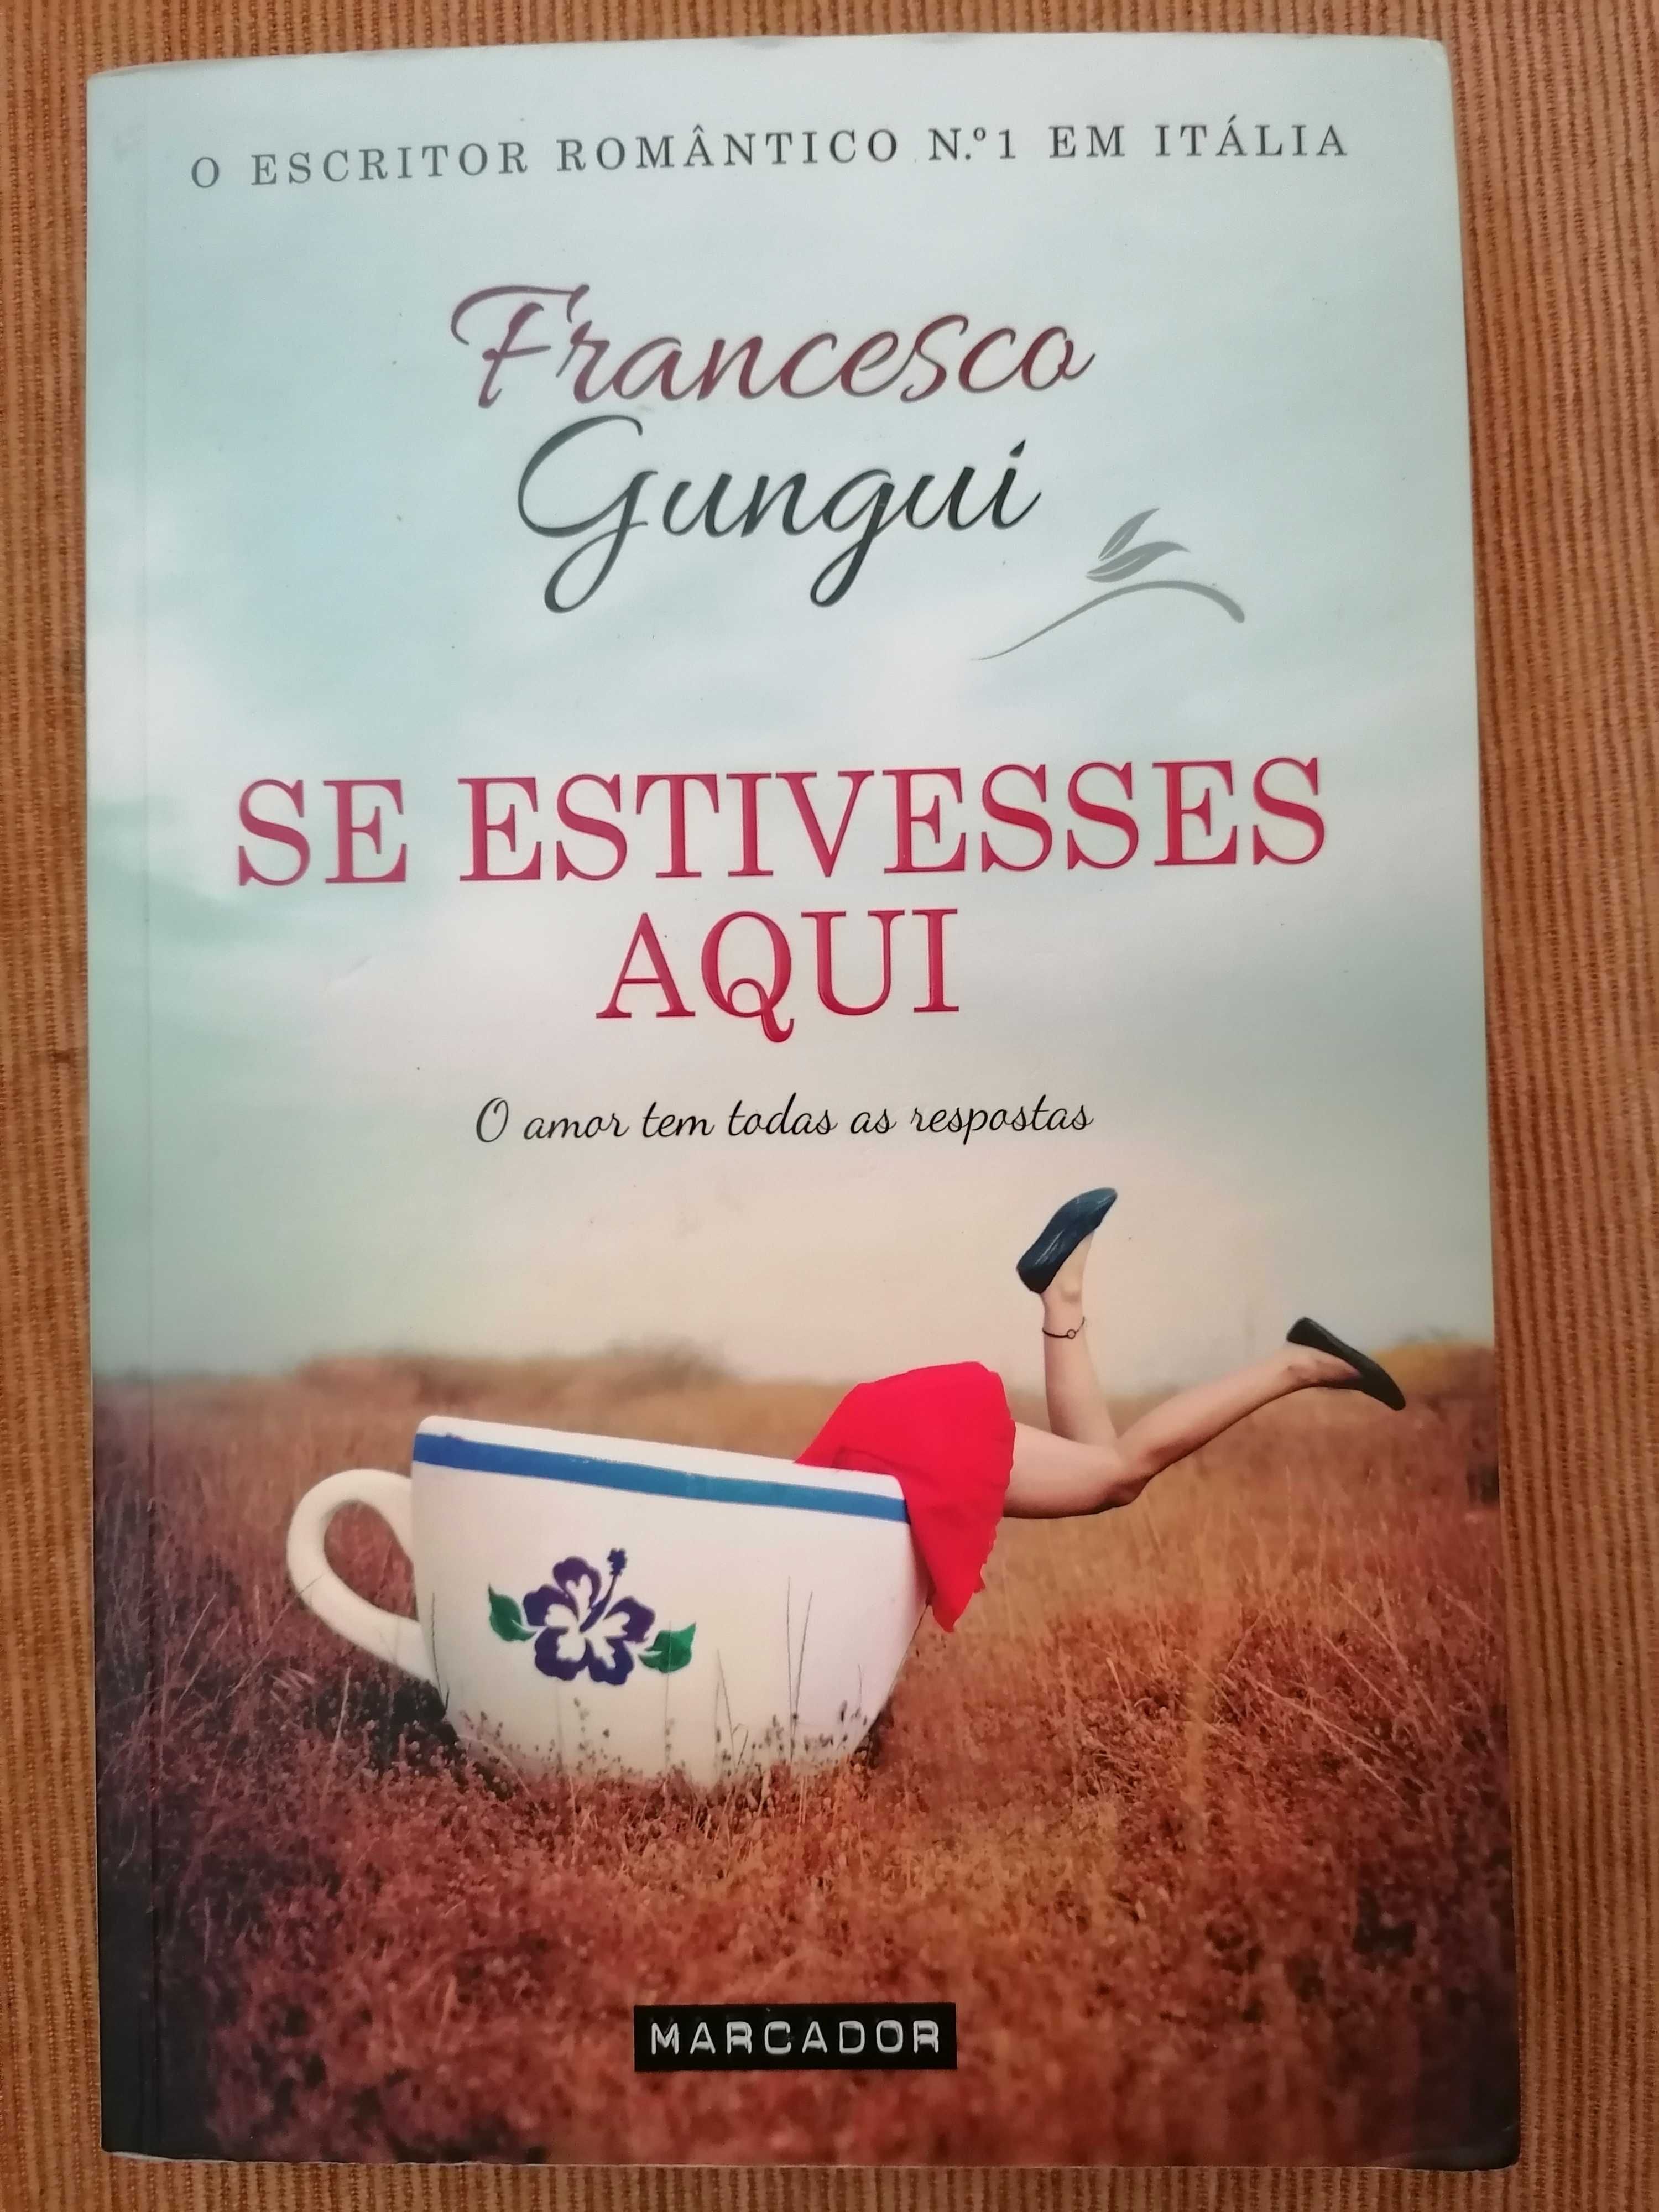 Francesca Gungui - "Se Estivesses Aqui" (Portes Incluídos)